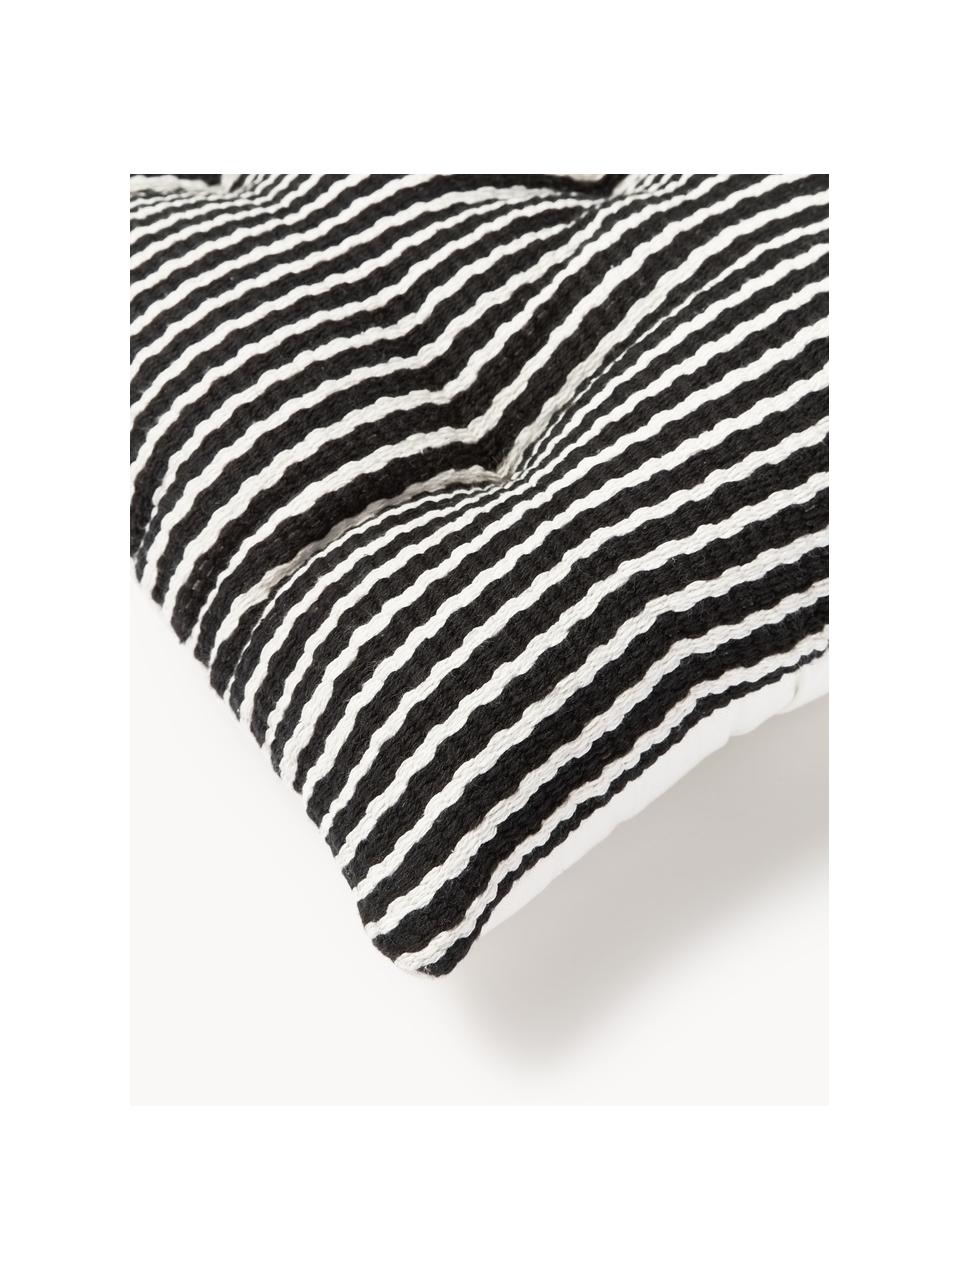 Poduszka na siedzisko z bawełny Silla, 2 szt., Tapicerka: 100% bawełna, Czarny, biały, S 50 x D 50 cm